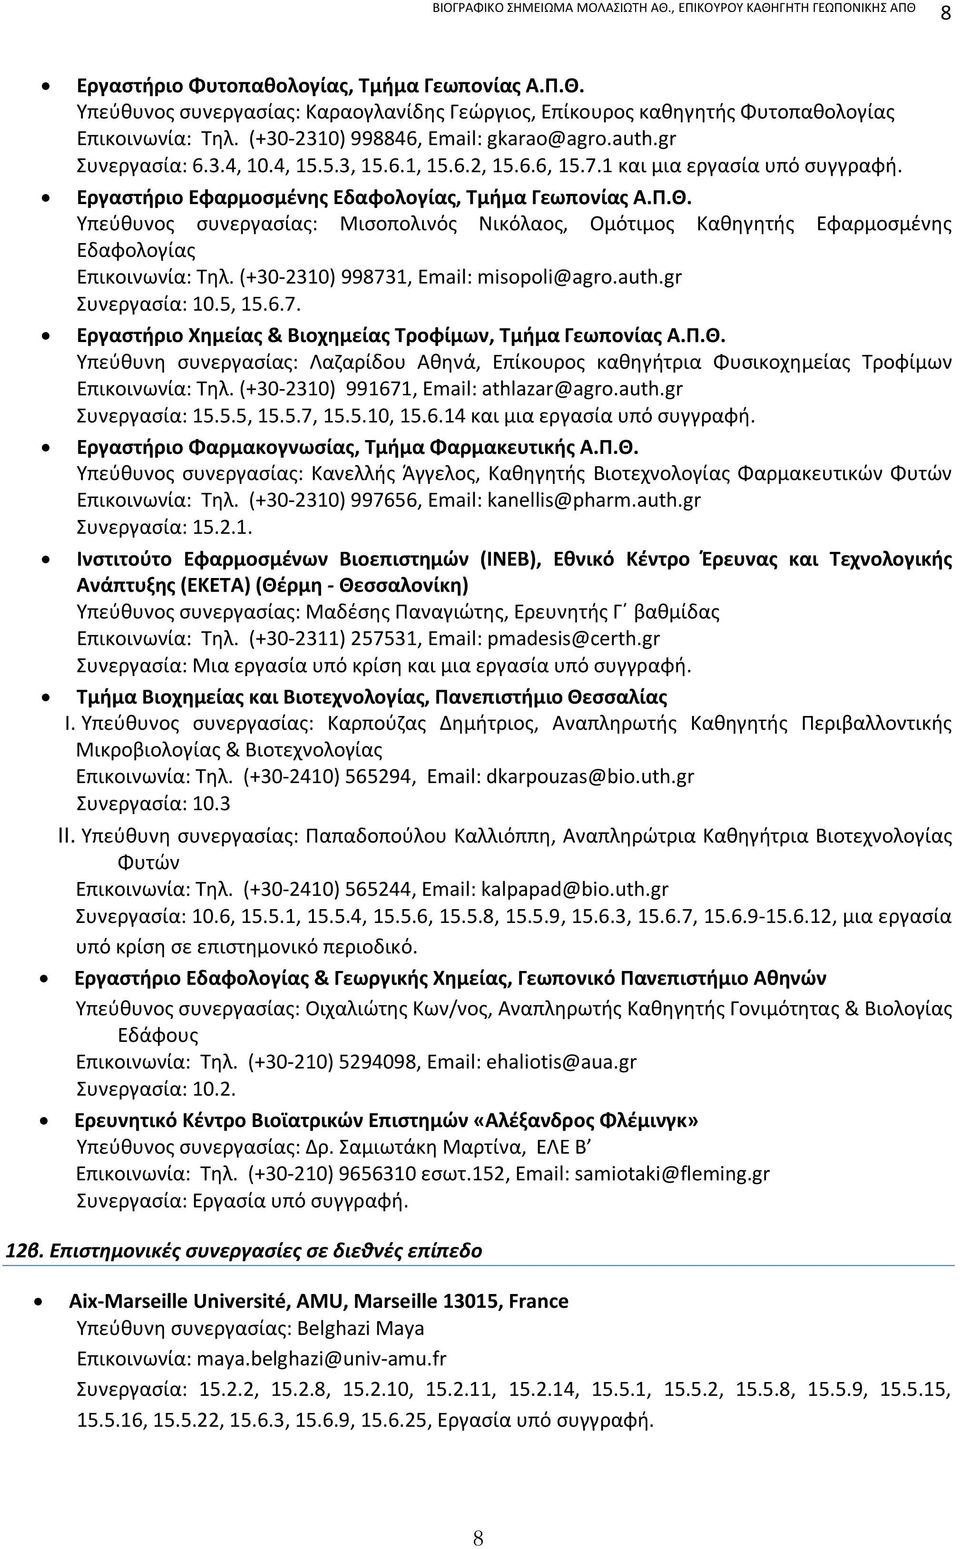 Υπεύθυνος συνεργασίας: Μισοπολινός Νικόλαος, Ομότιμος Καθηγητής Εφαρμοσμένης Εδαφολογίας Επικοινωνία: Τηλ. (+30-2310) 998731, Email: misopoli@agro.auth.gr Συνεργασία: 10.5, 15.6.7. Εργαστήριο Χημείας & Βιοχημείας Τροφίμων, Τμήμα Γεωπονίας Α.